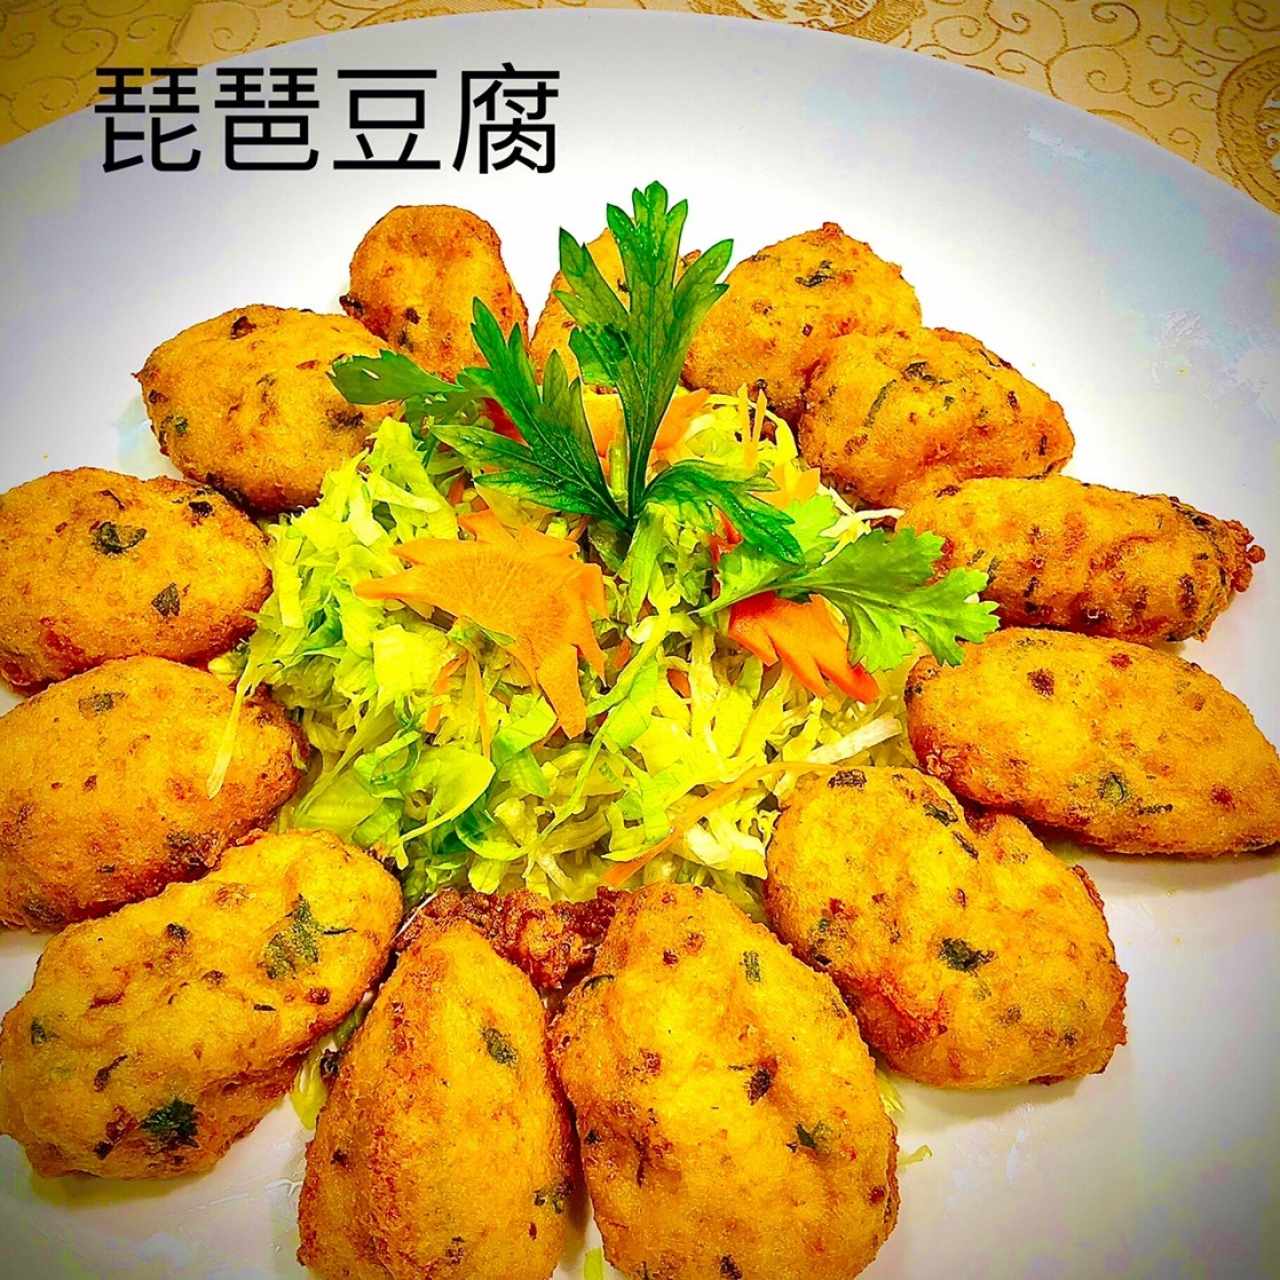 Tofus - Pipa Tofu